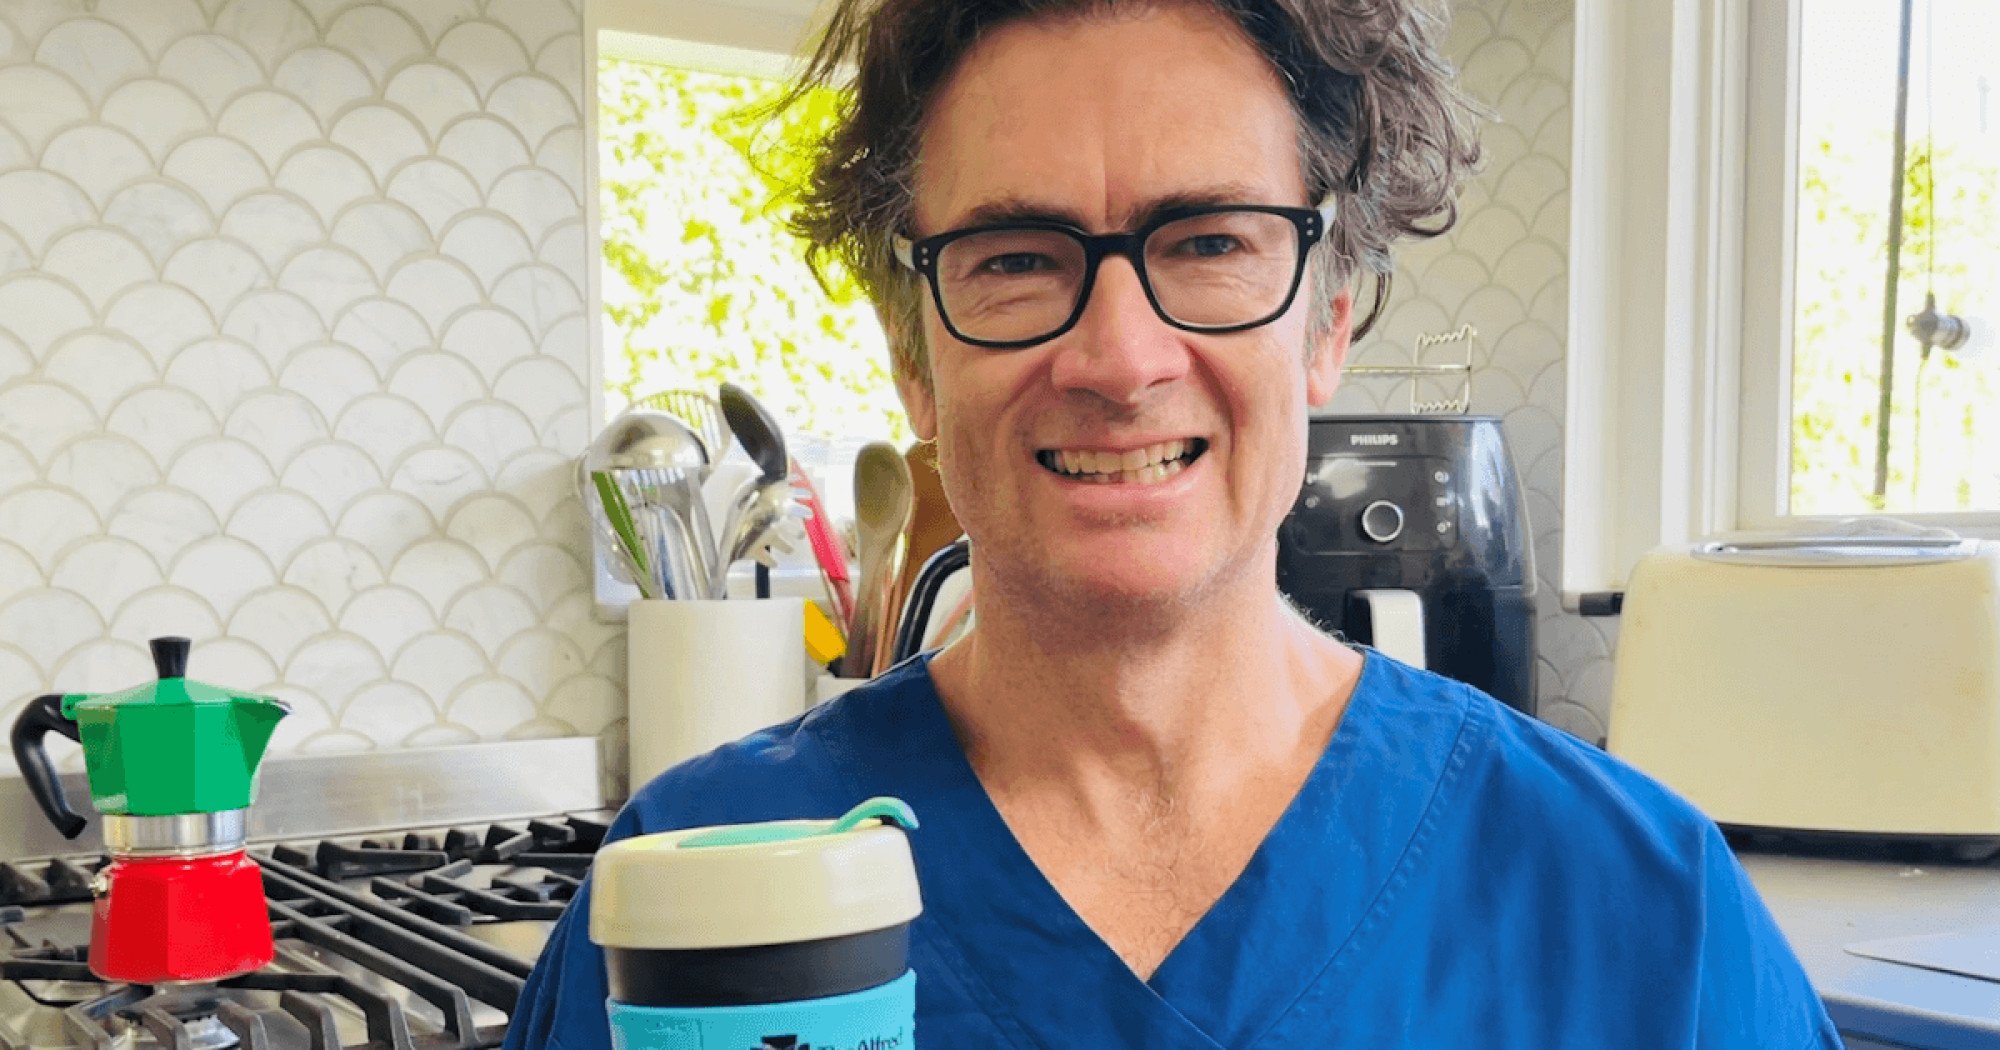 Tiến sĩ Peter Kistler, giáo sư và người đứng đầu nghiên cứu rối loạn nhịp tim tại Bệnh viện Alfred và Viện Tim Baker ở Melbourne, Australia, đã dẫn đầu một trong những nghiên cứu về lợi ích sức khỏe của cà phê.